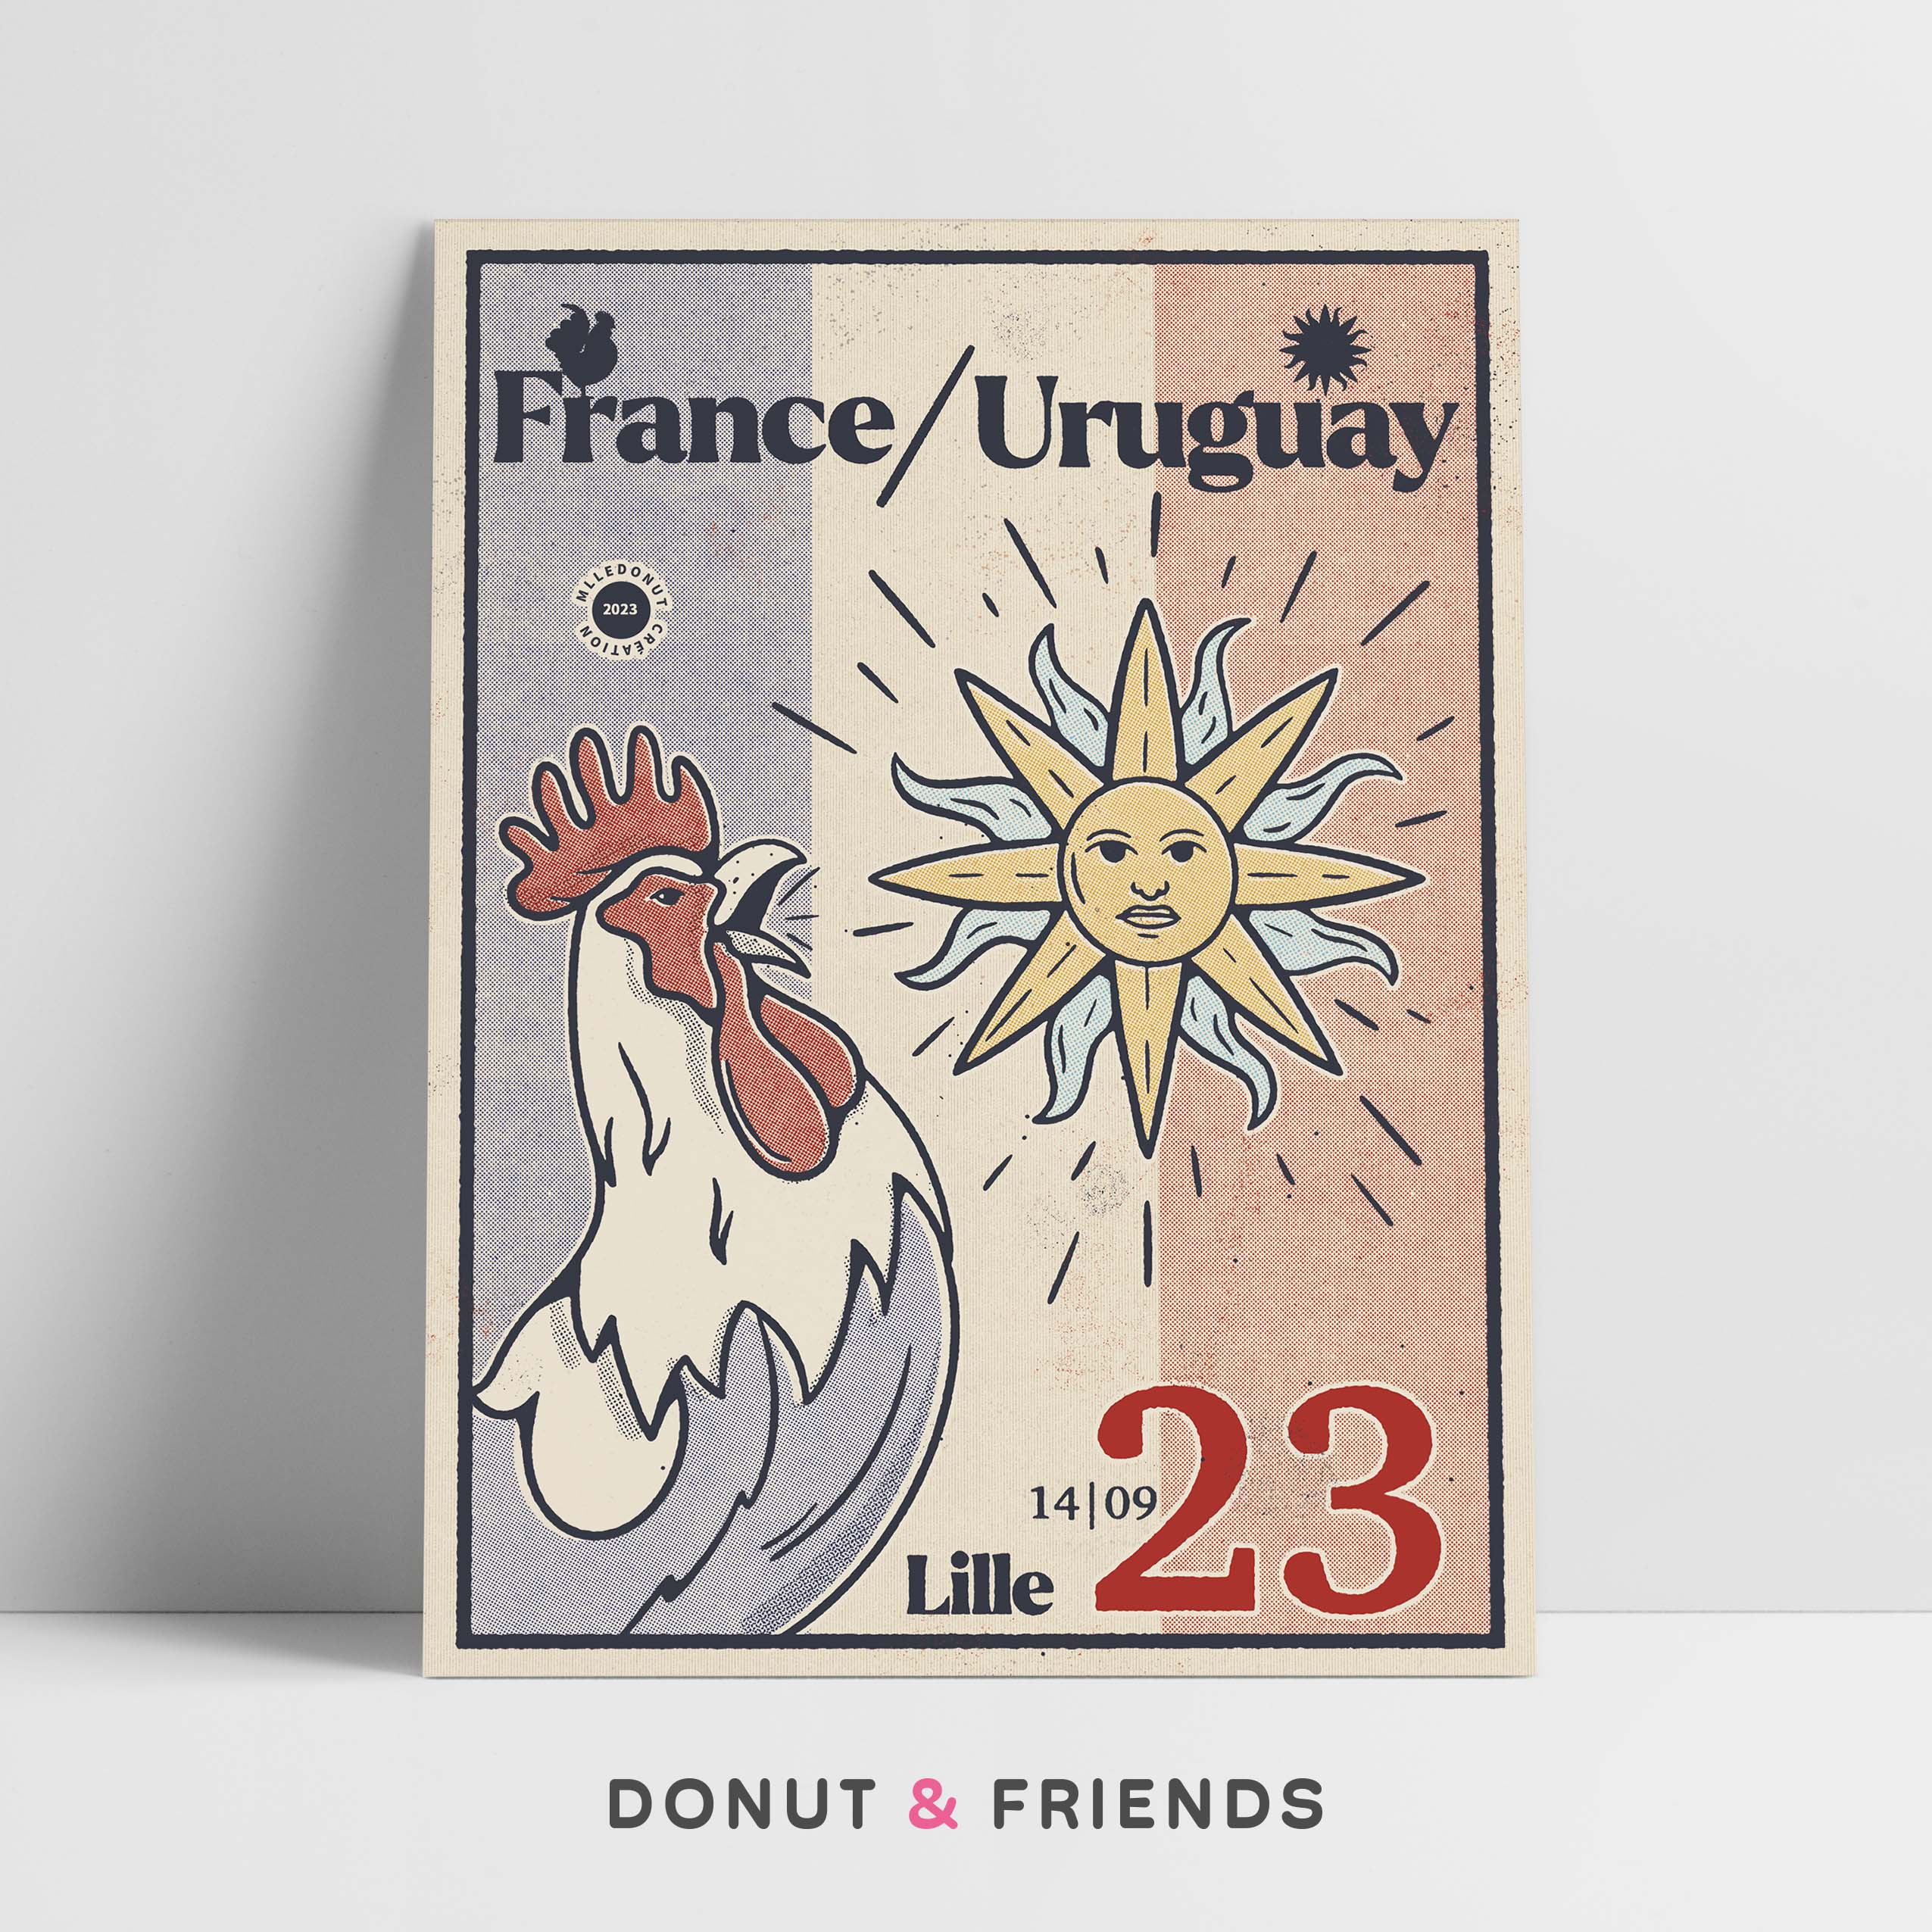 Affiche rugby vintage France uruguay, coq et soleil